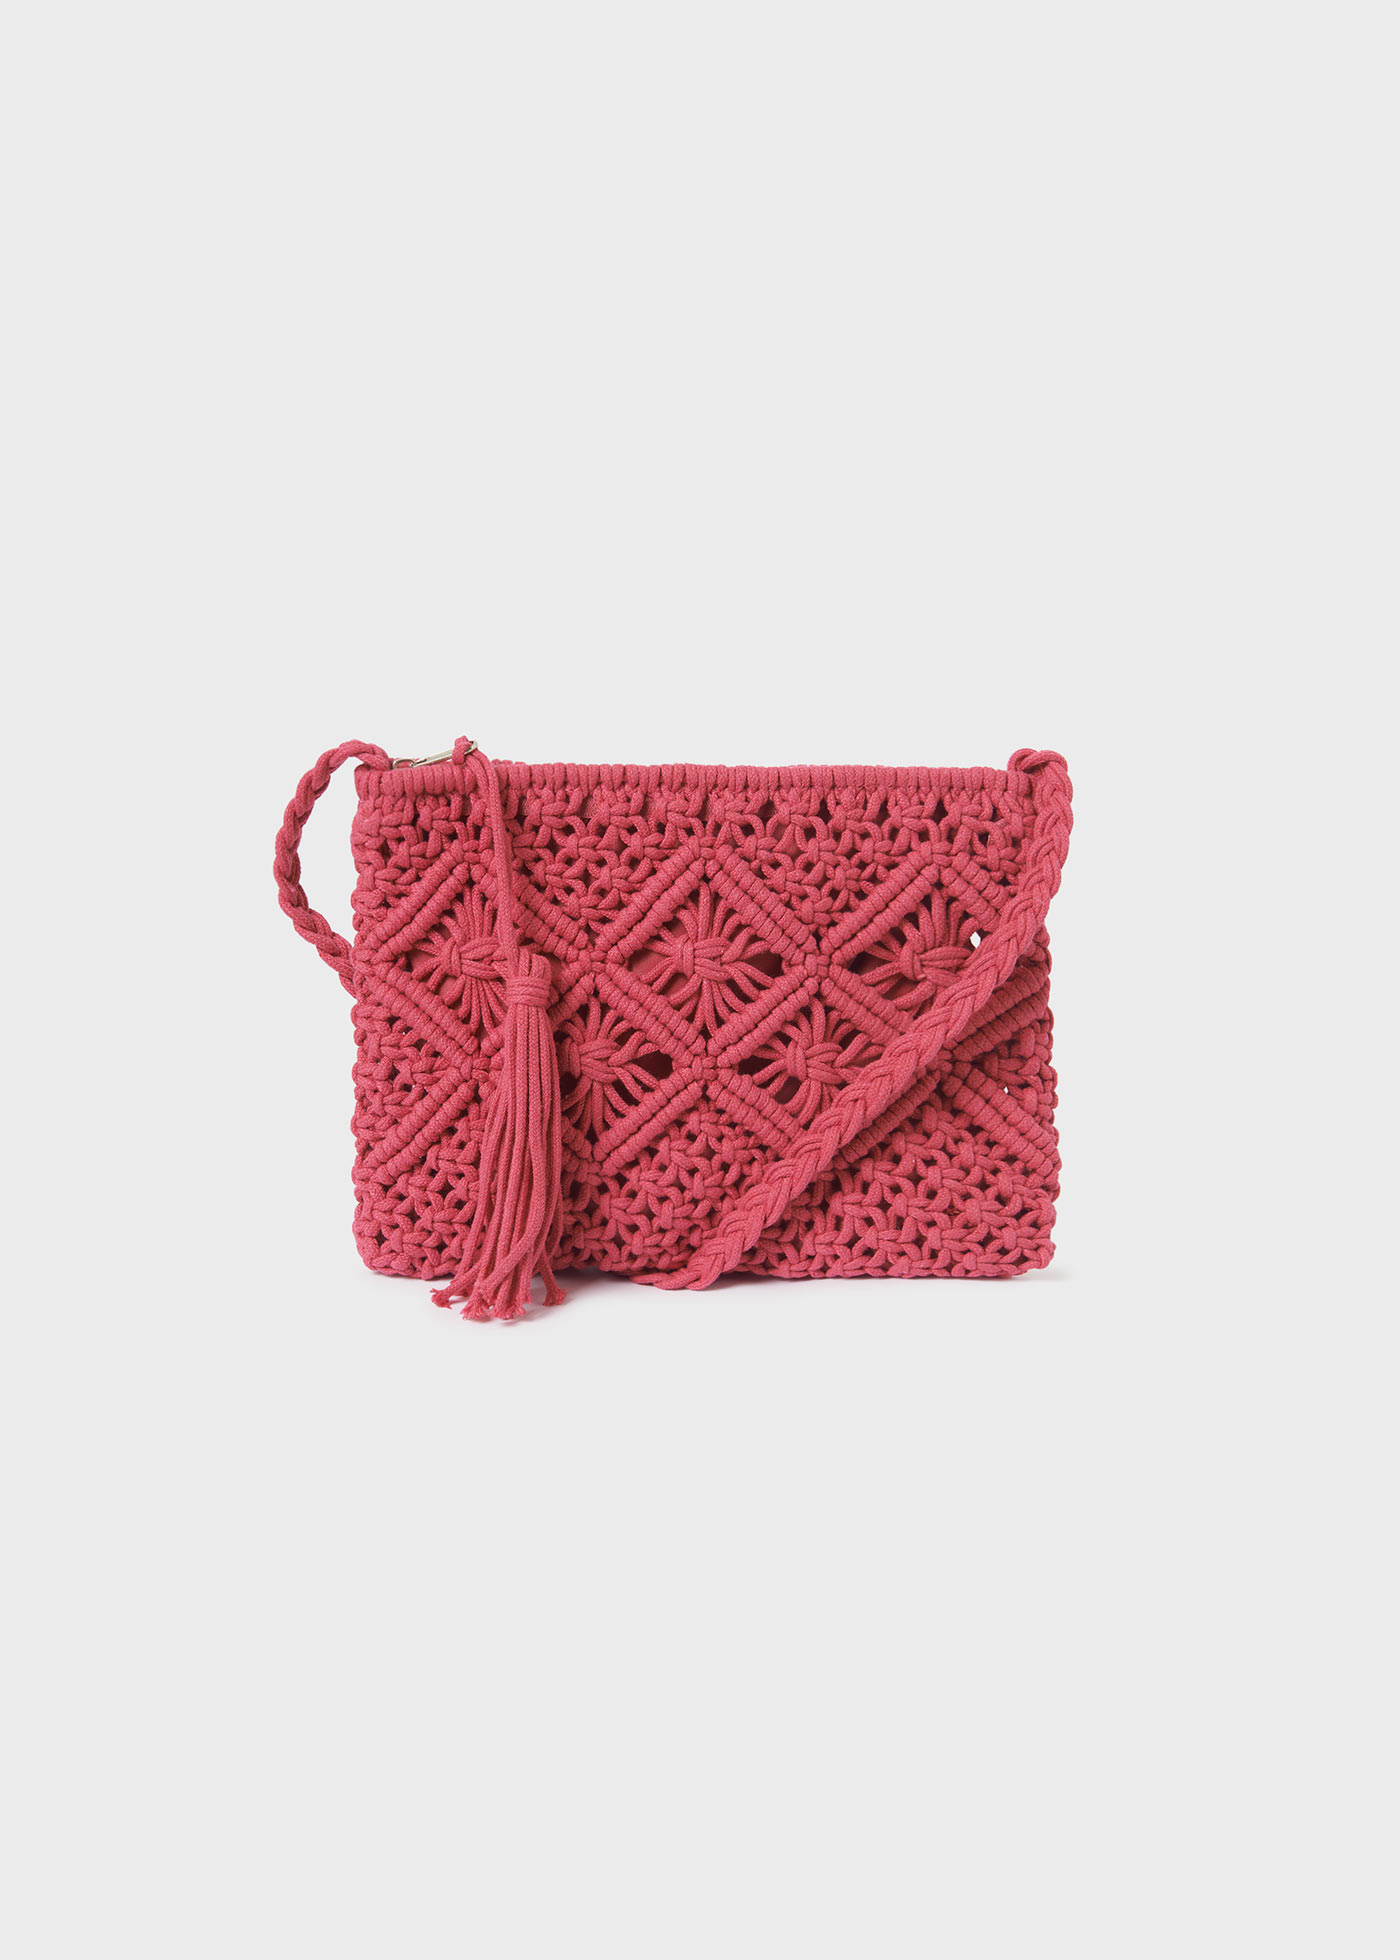 Crochet-Tasche Teenager Mädchen